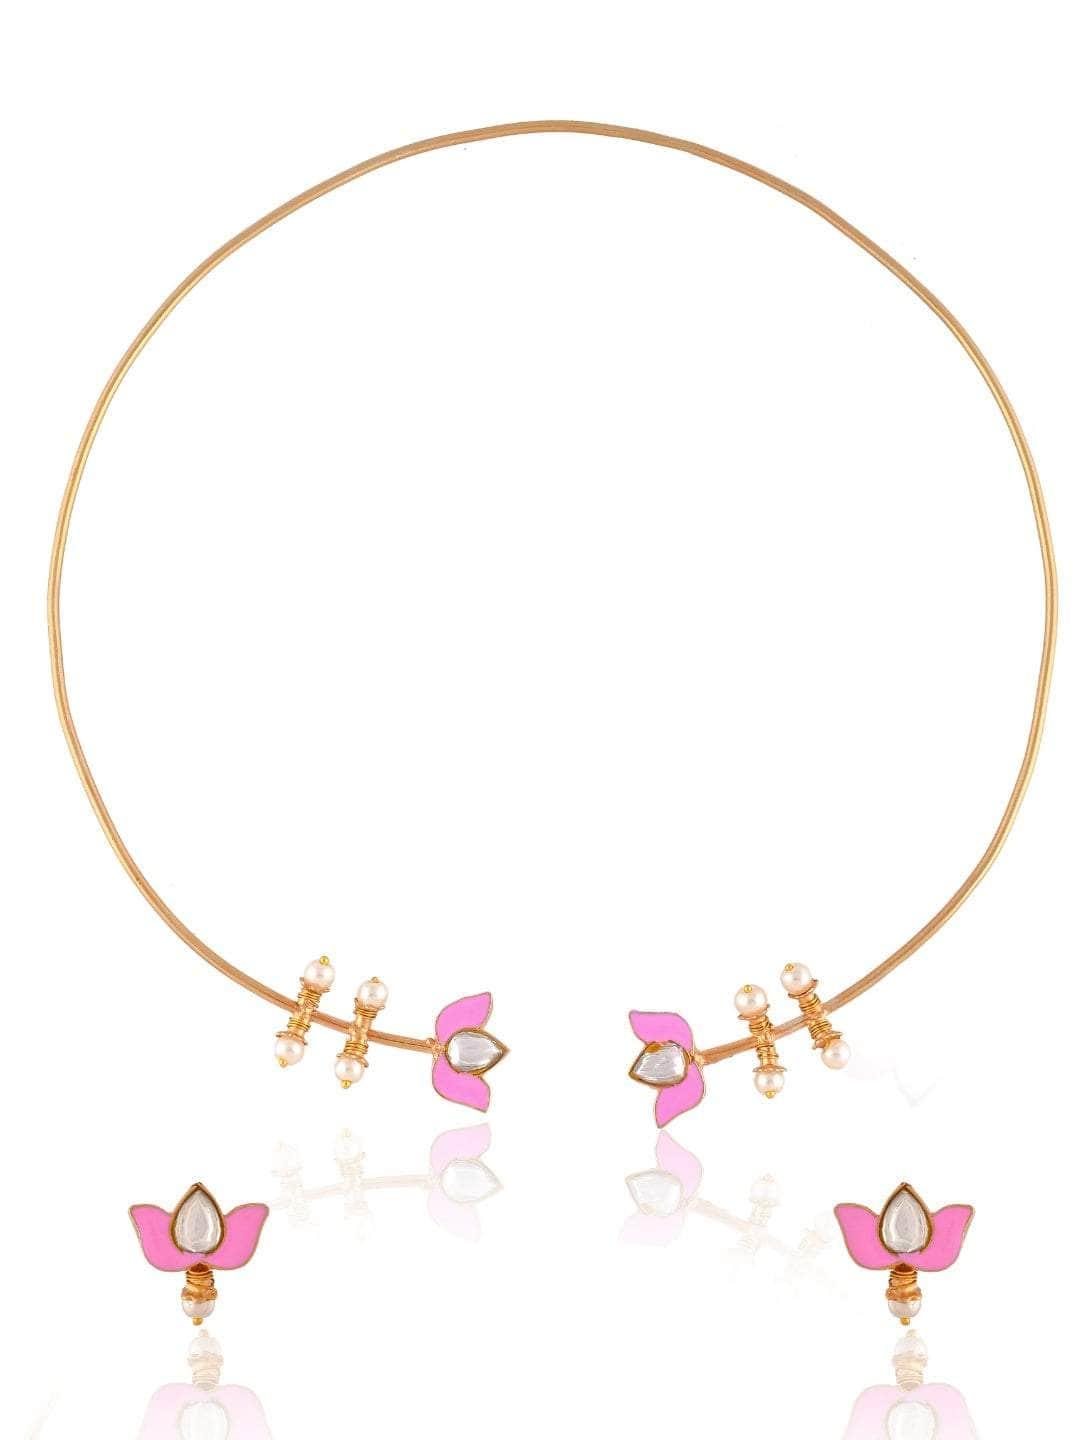 Ishhaara Lotus Motif open type necklace - Rose